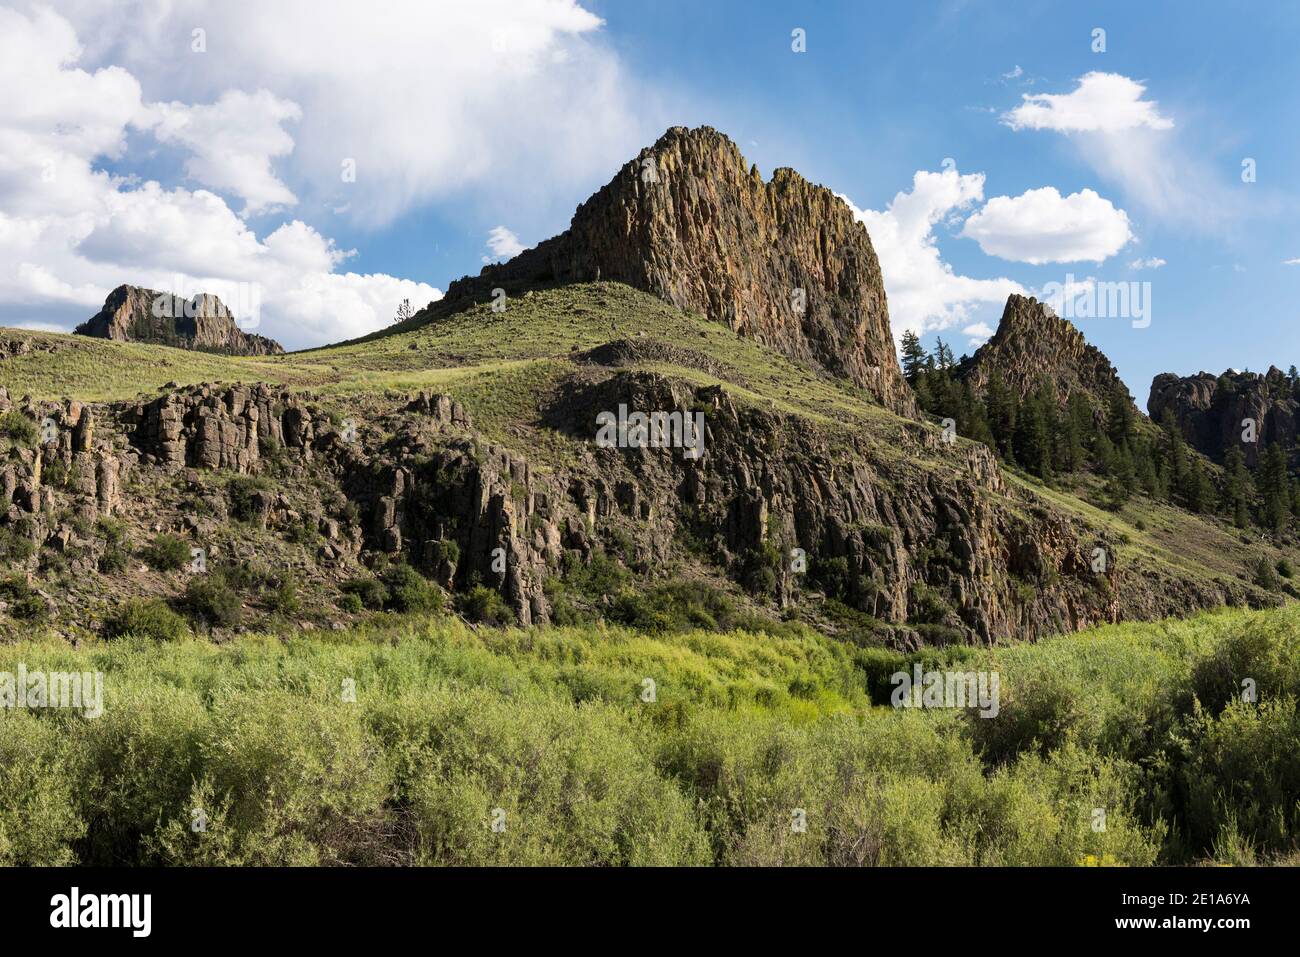 La formazione rocciosa dei Castles si trova all'interno della San Isabel National Forest, Colorado. Foto Stock